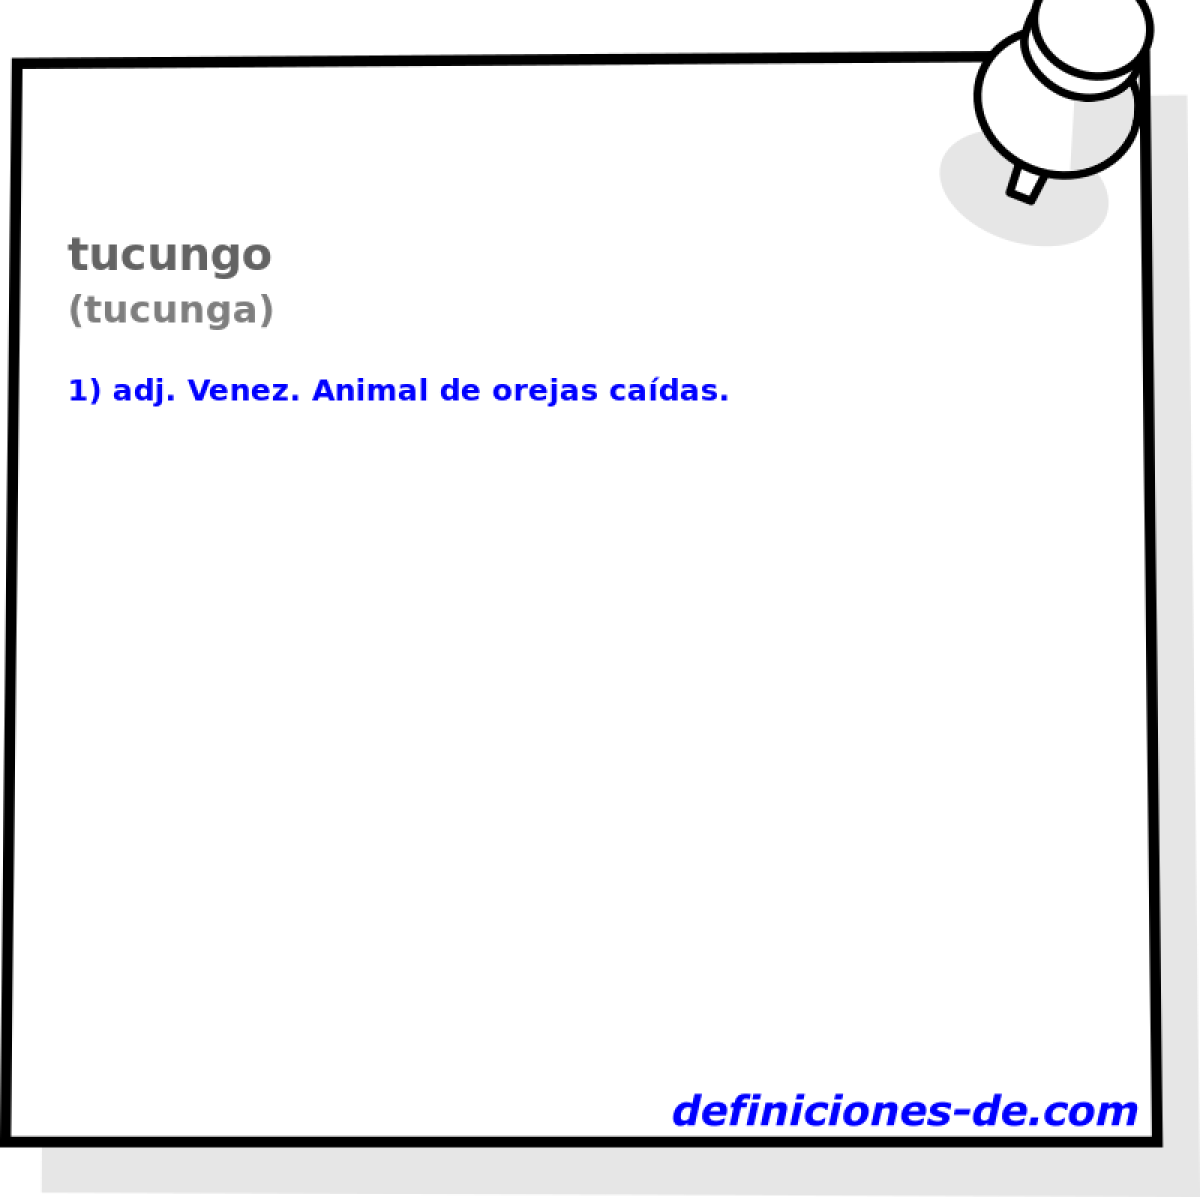 tucungo (tucunga)